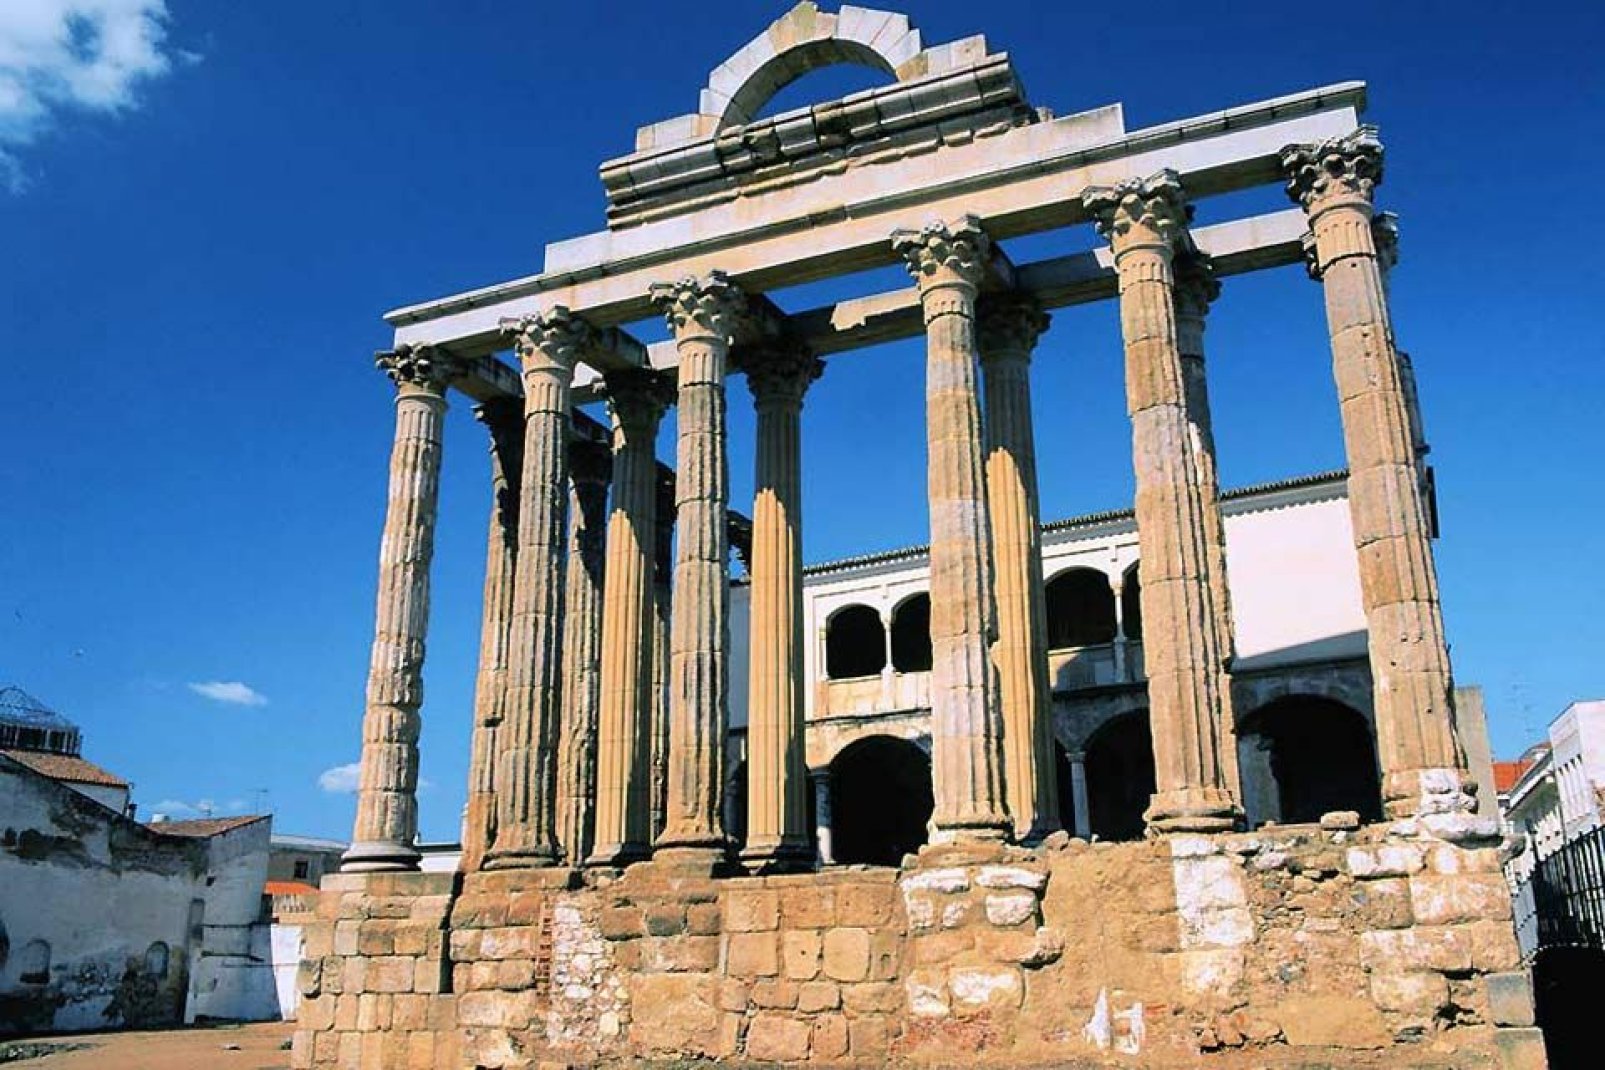 Die Stadt Caceres wurde von den Römern 34 v. Chr. gegründet, daher findet man in der Stadt sowie dem Umland zahlreiche bedeutende archäologische Überreste.